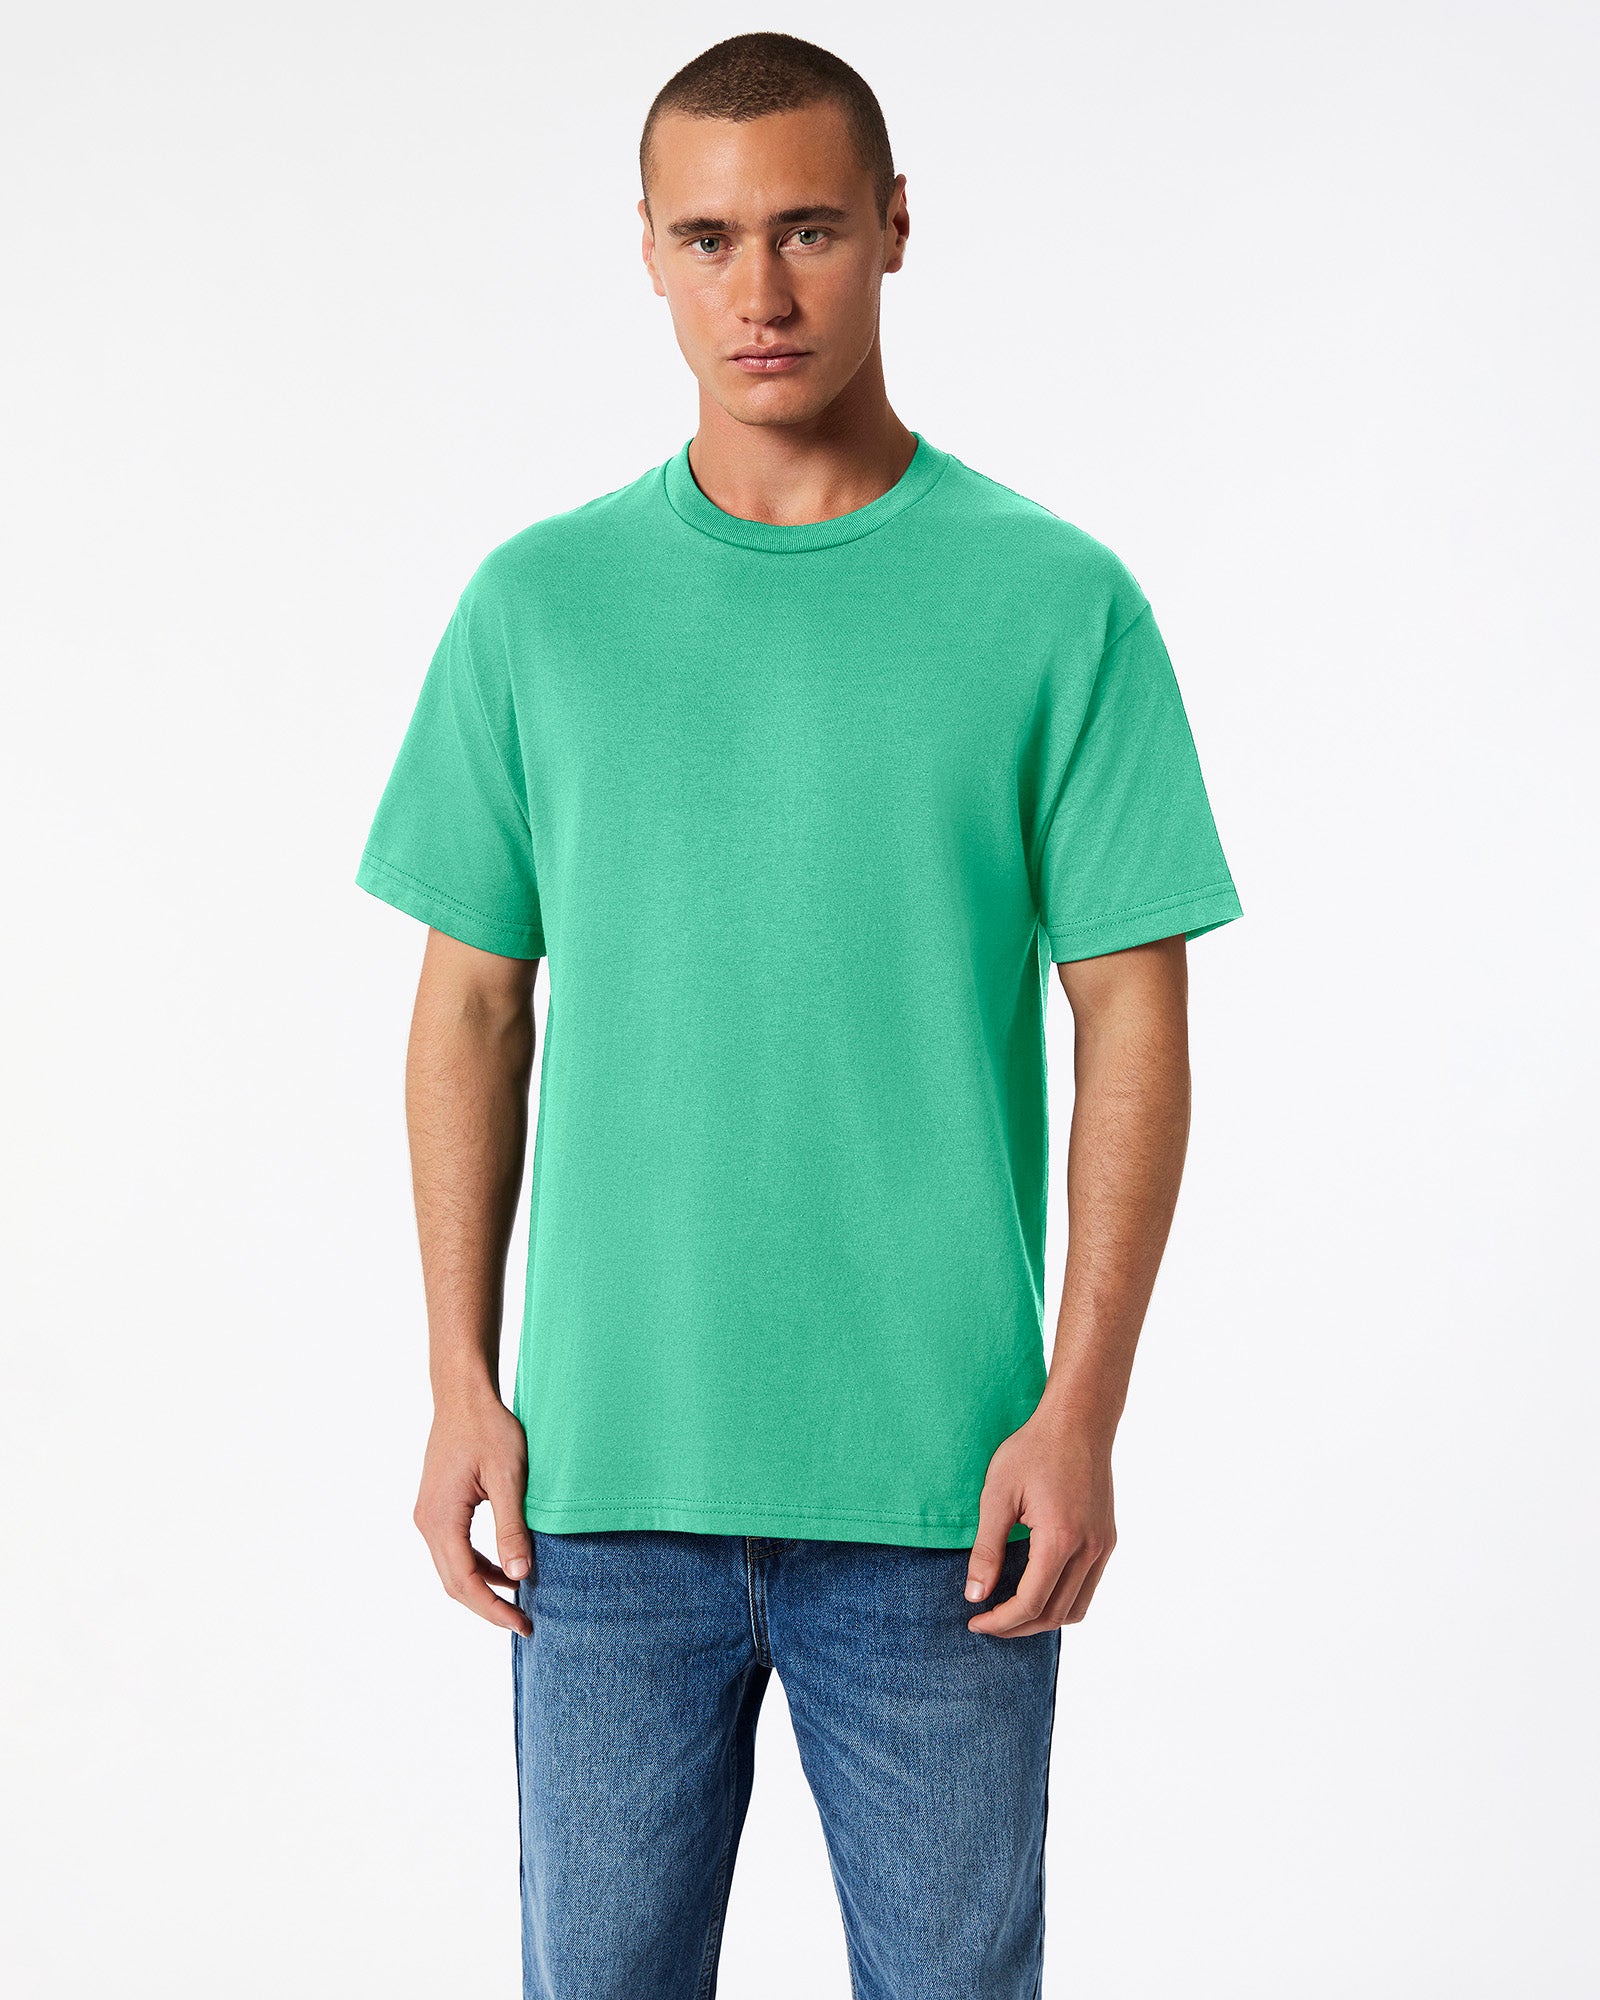 Heavyweight Unisex T-Shirt